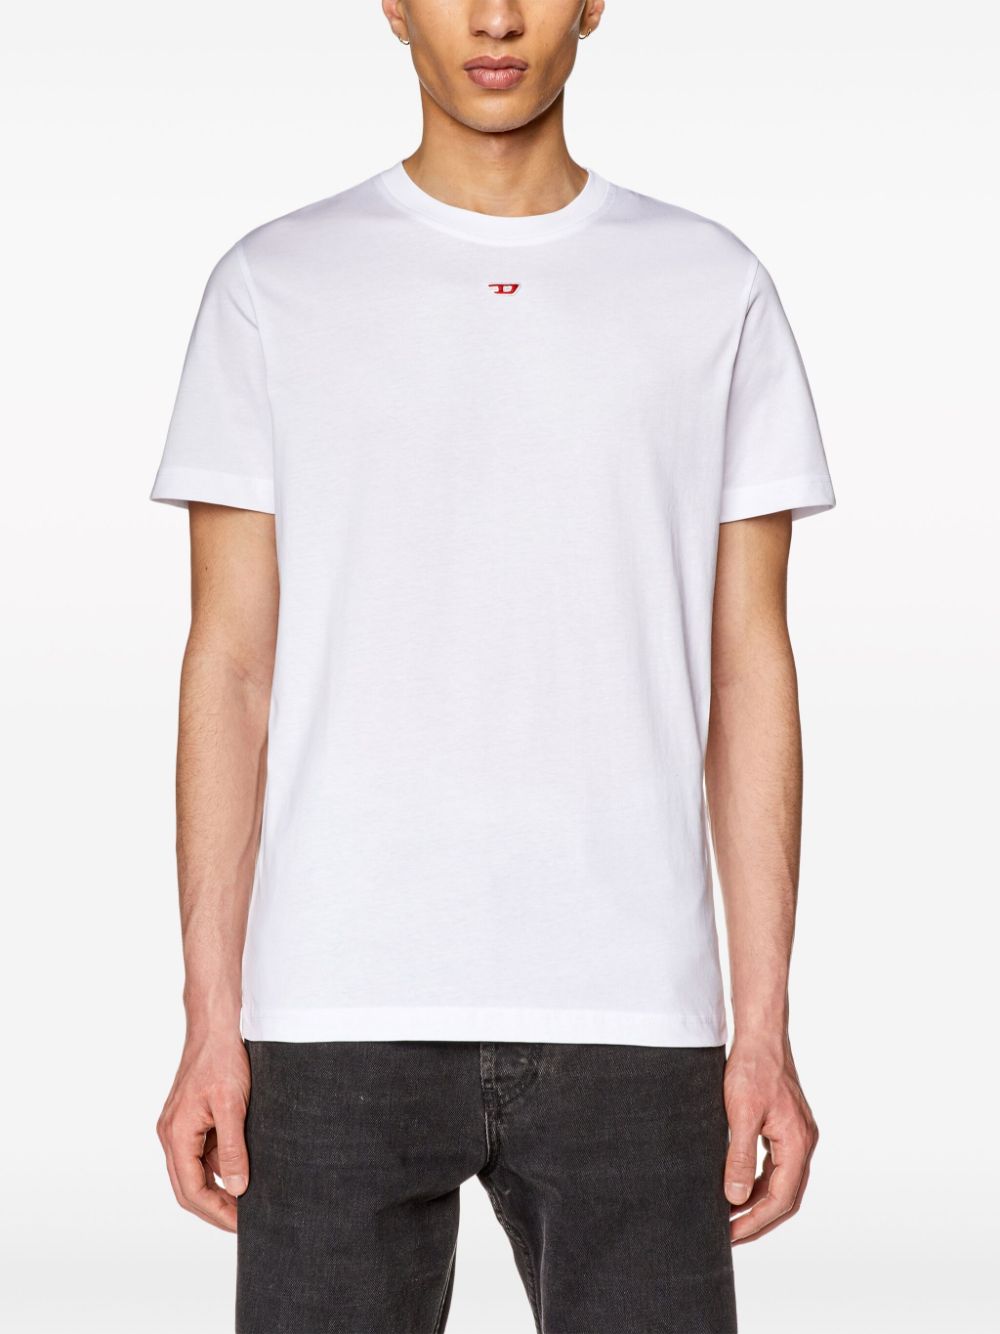 T-shirt logotype bianca